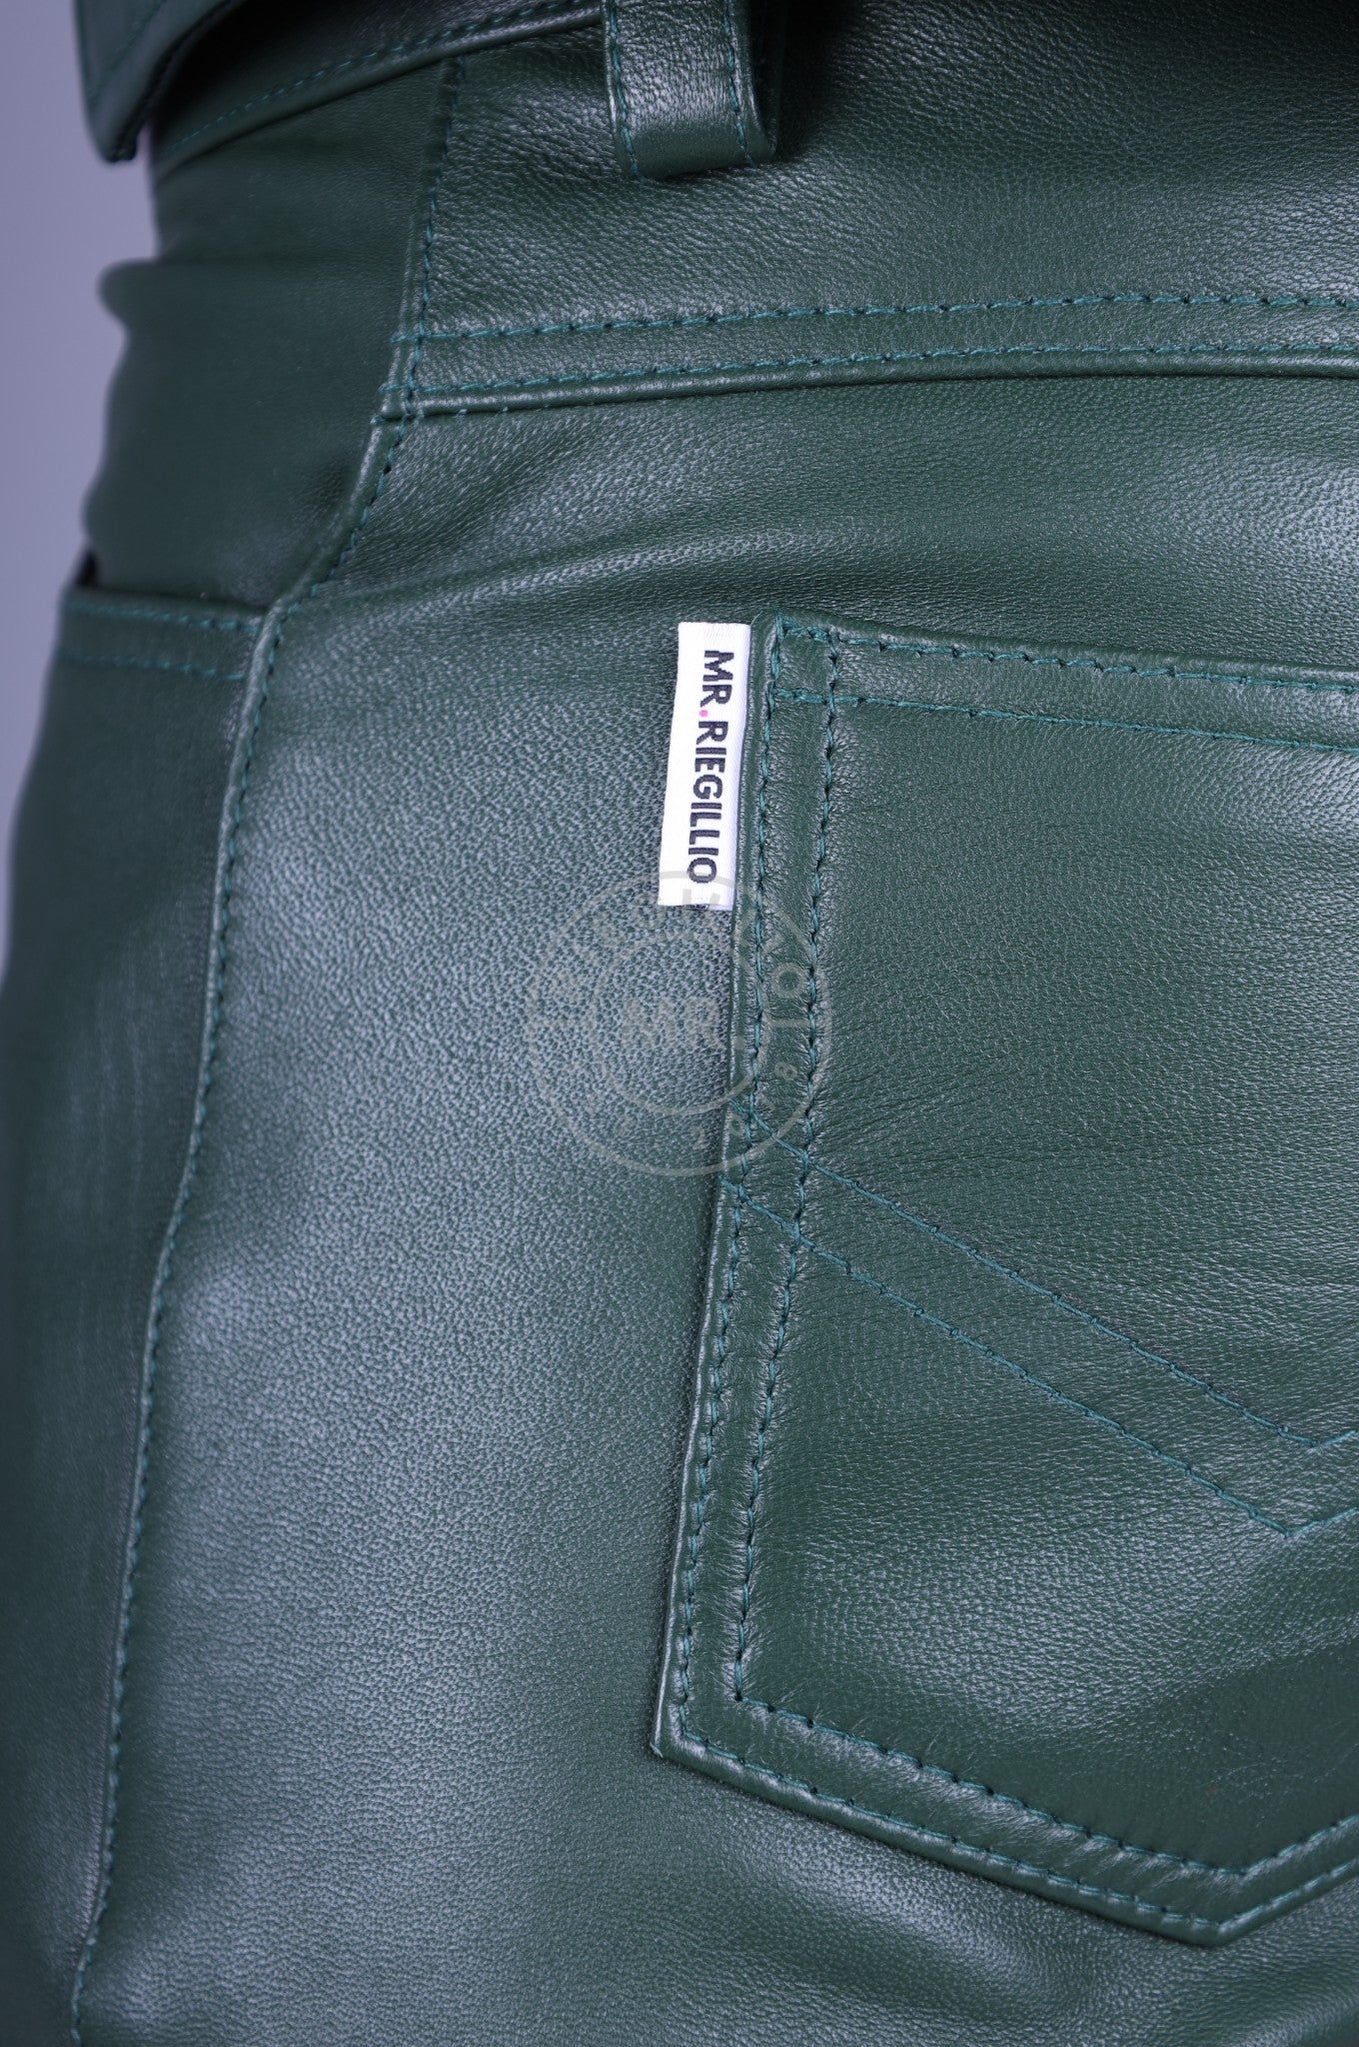 Leather 5 Pocket Short - Dark Green at MR. Riegillio